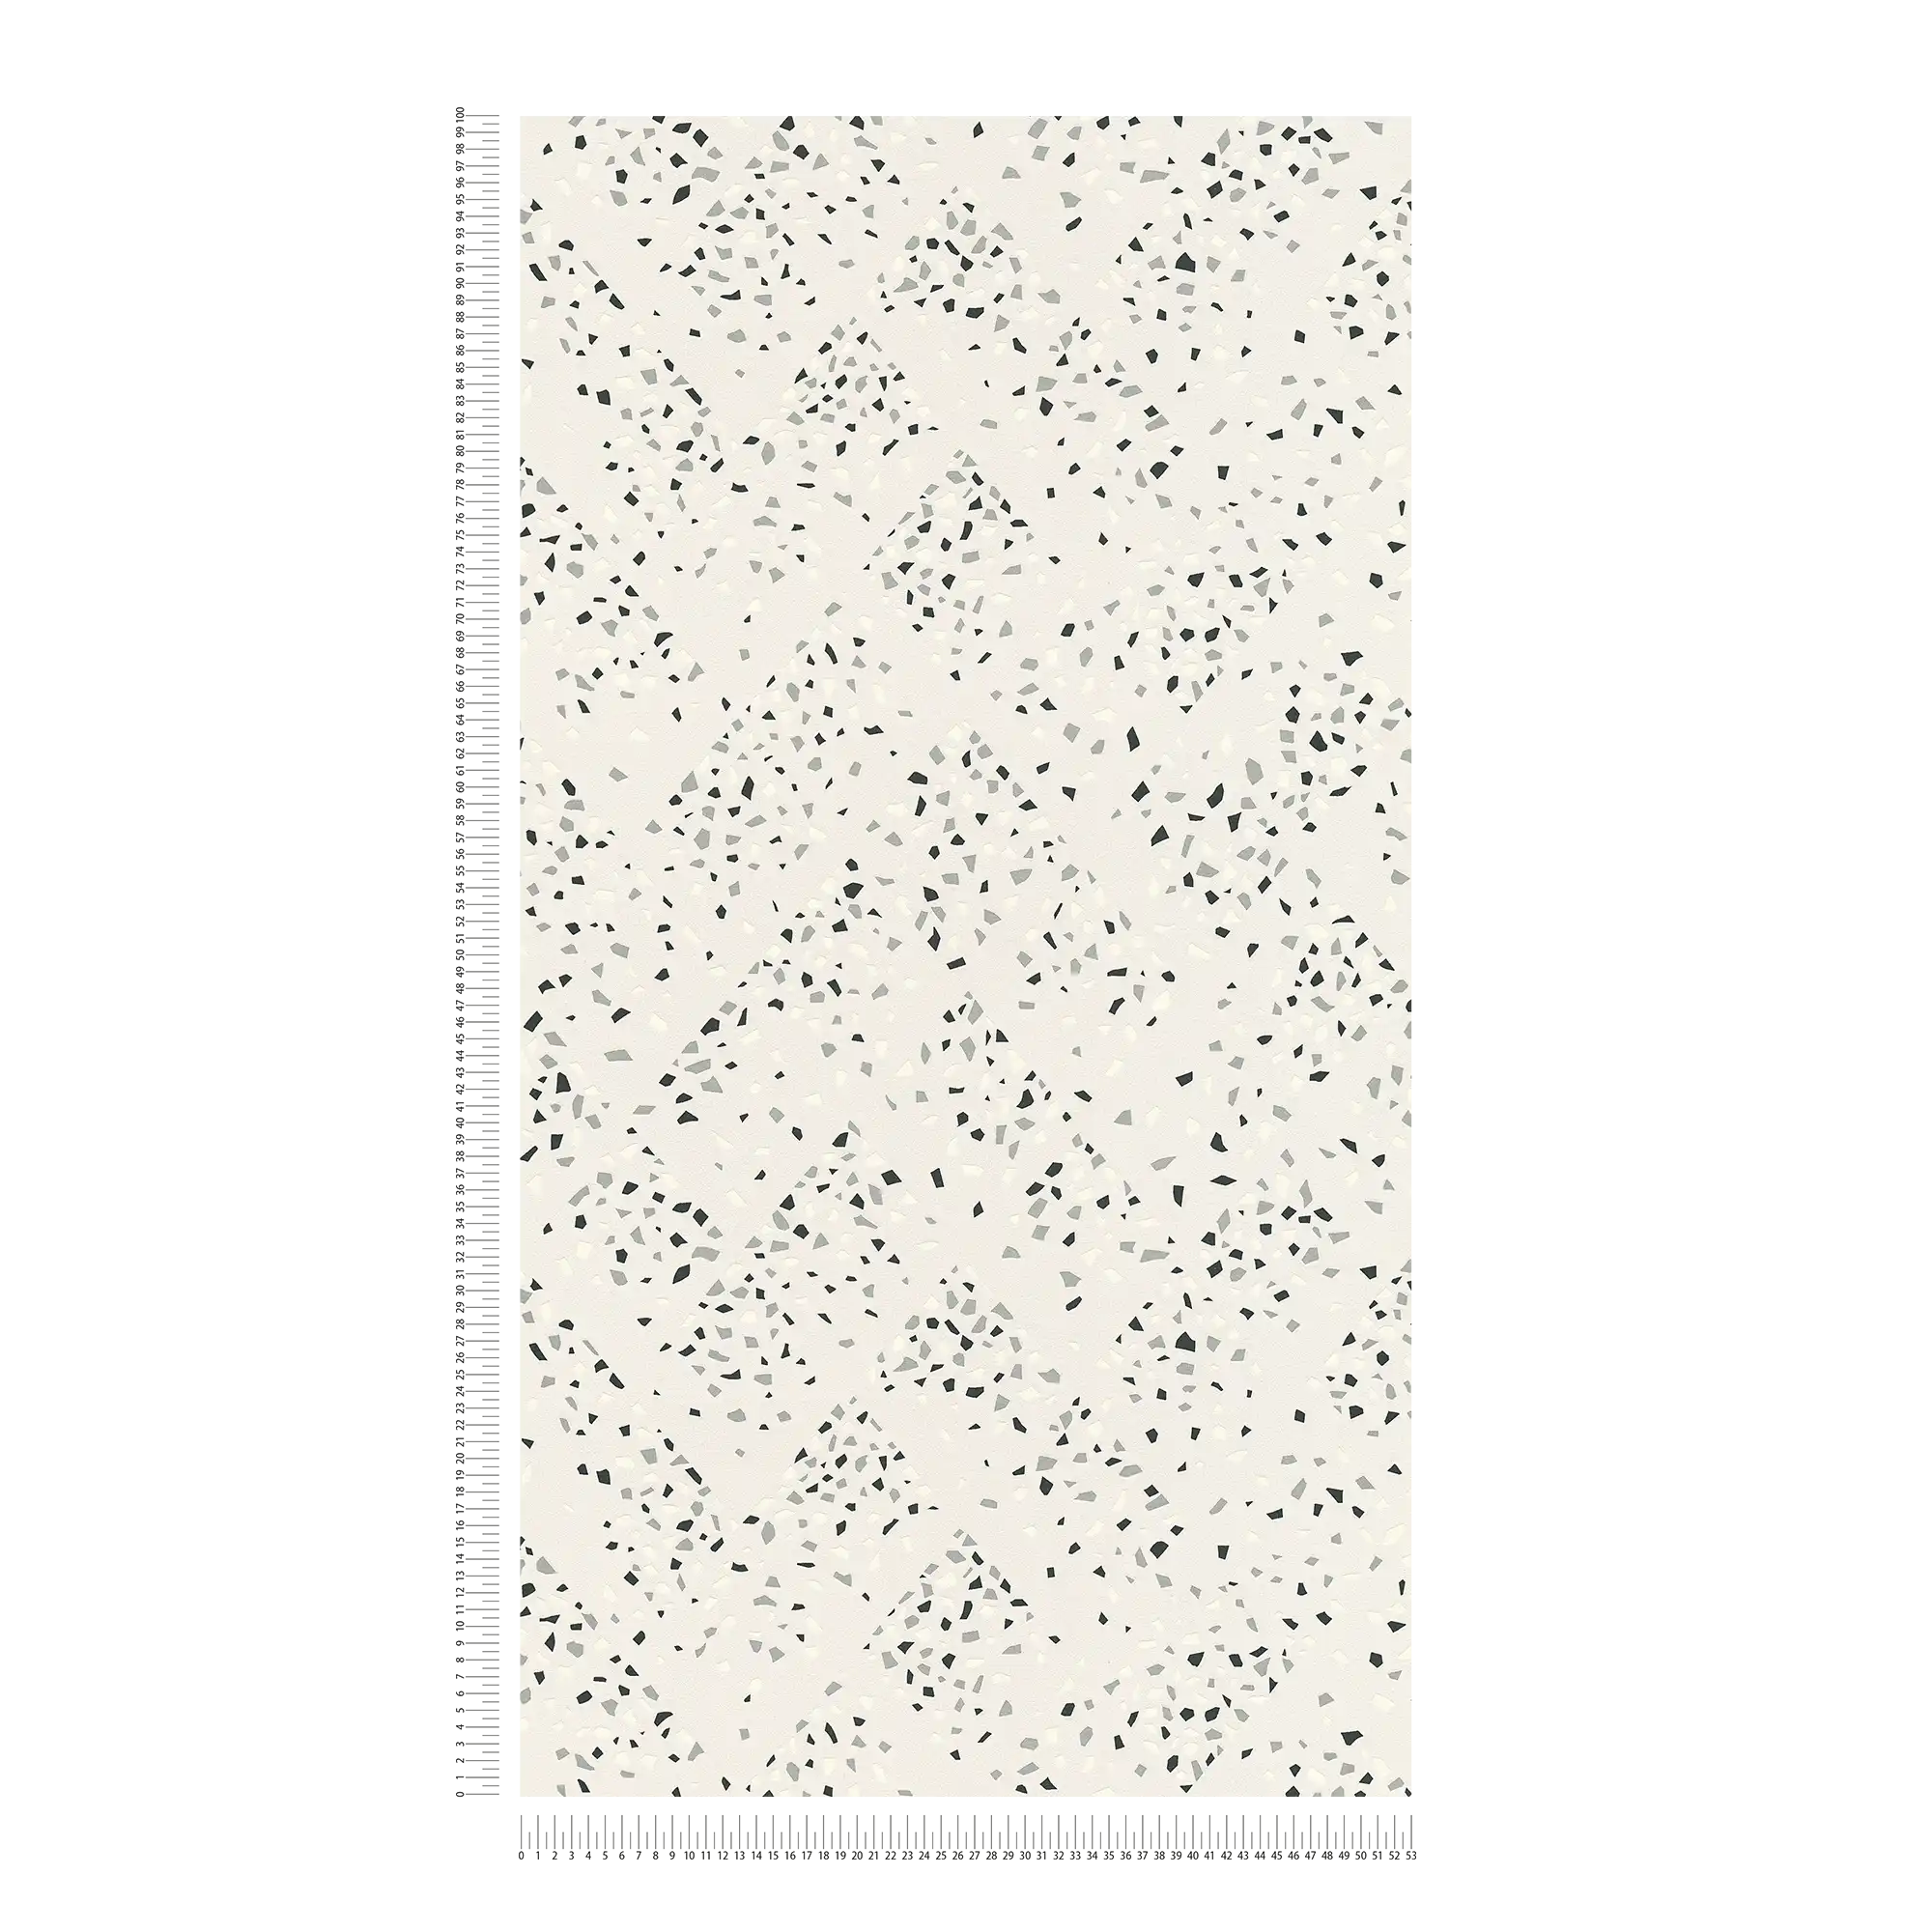             Tapete Terrazzo Muster & Metallic Effekt – Weiß, Schwarz, Silber
        